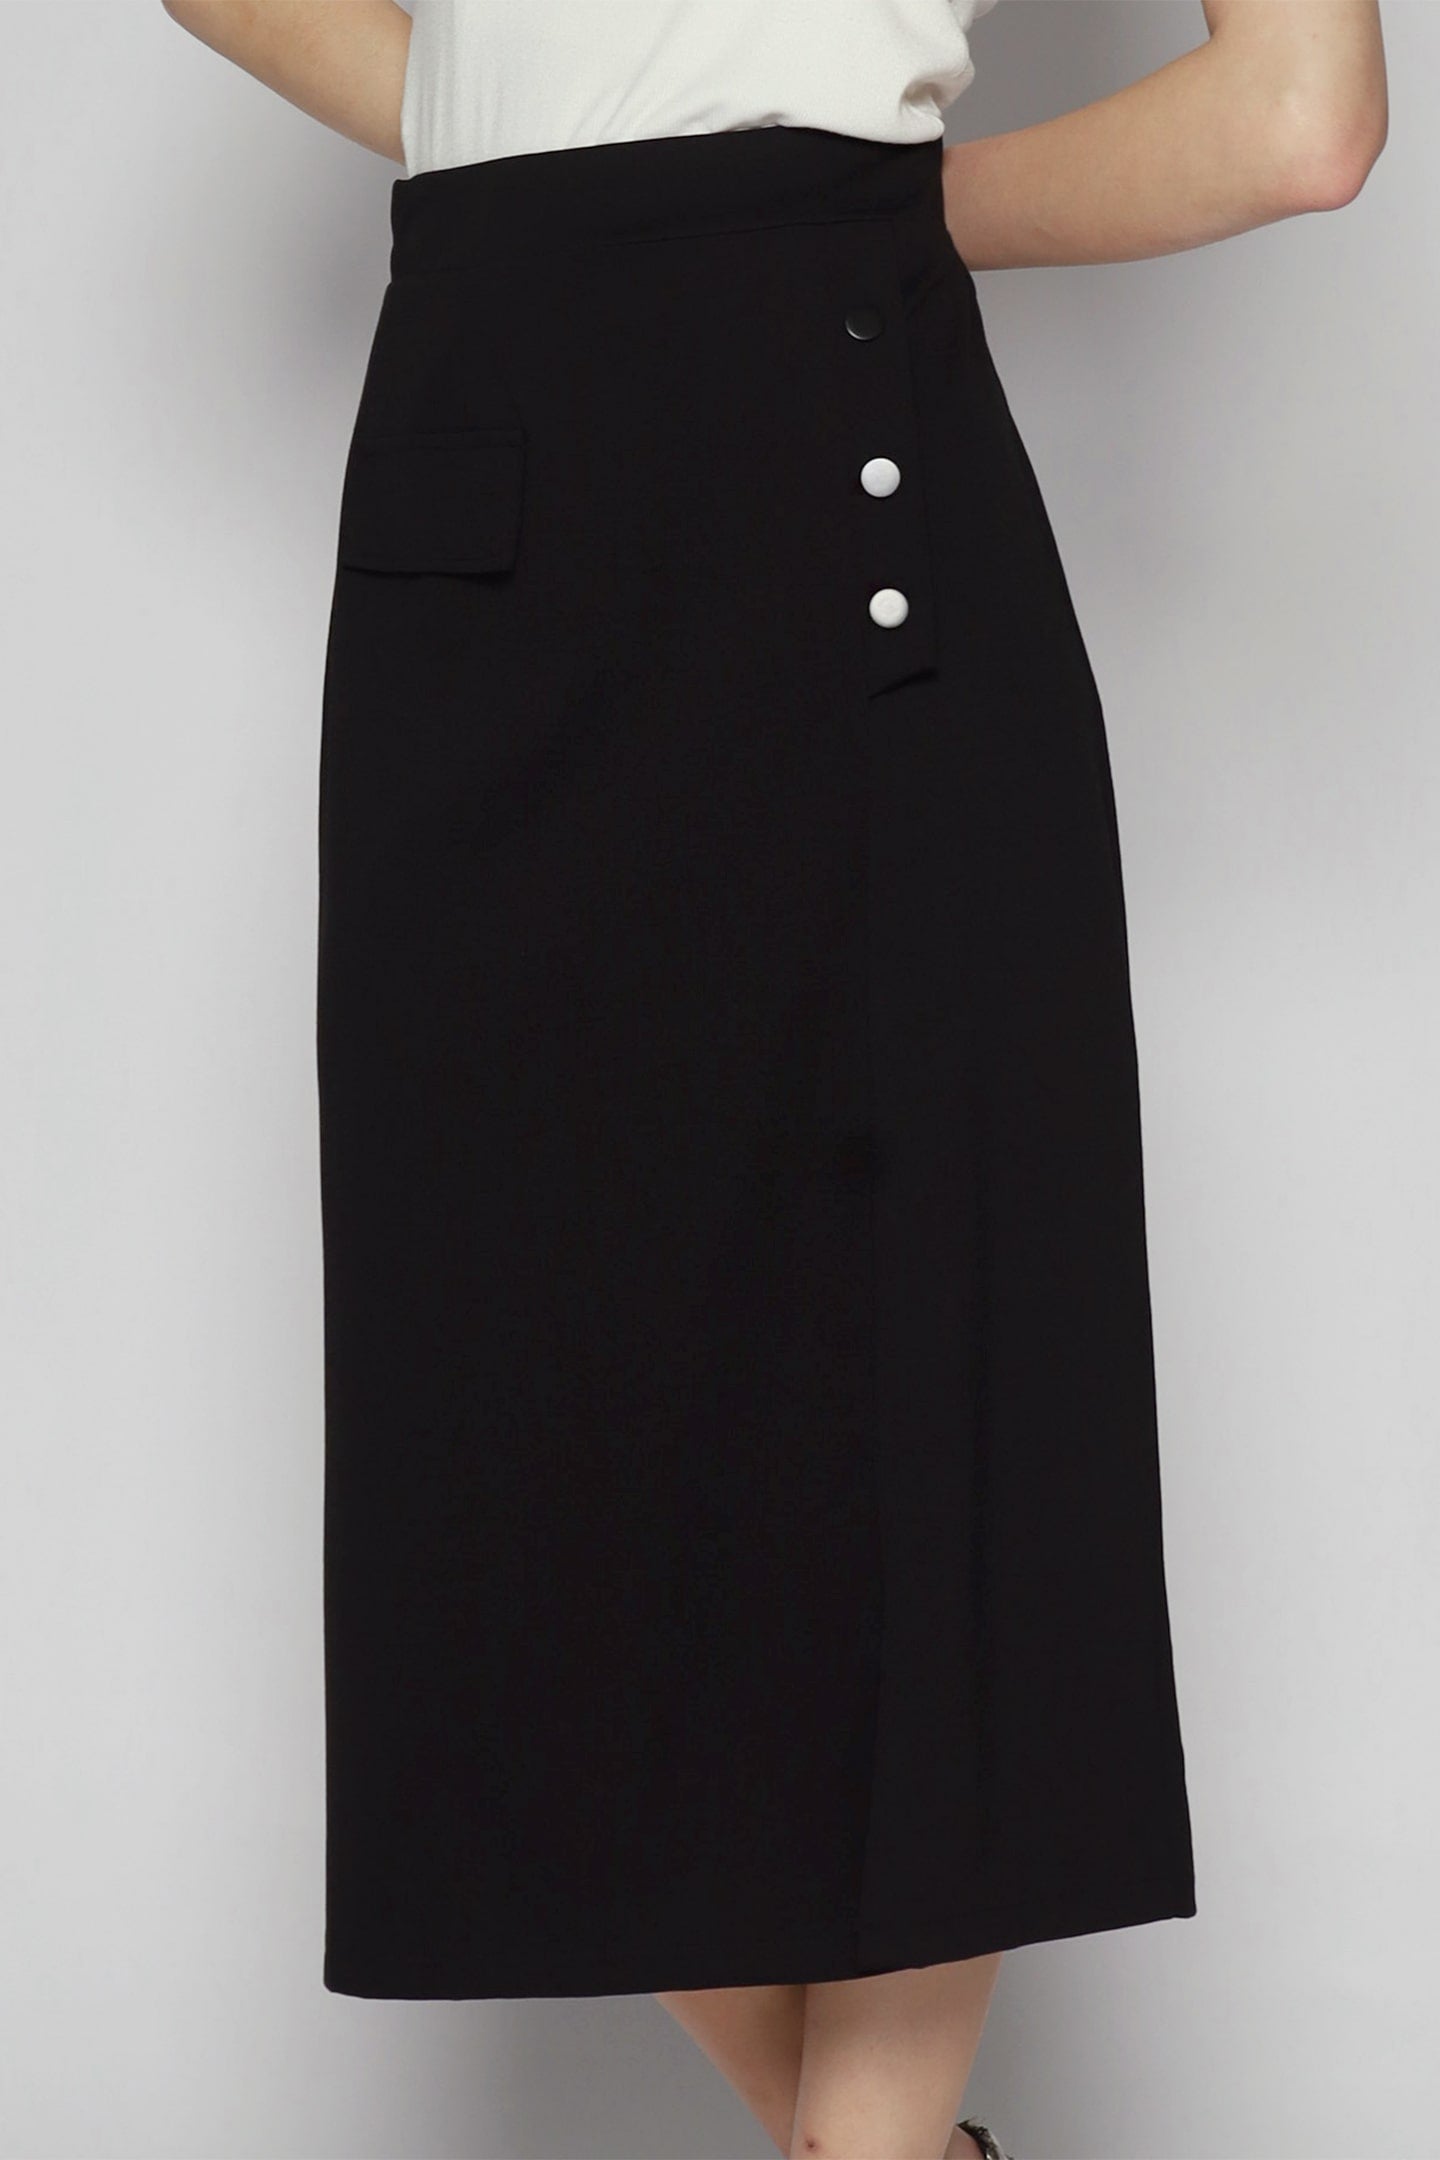 Pippa Skirt in Black